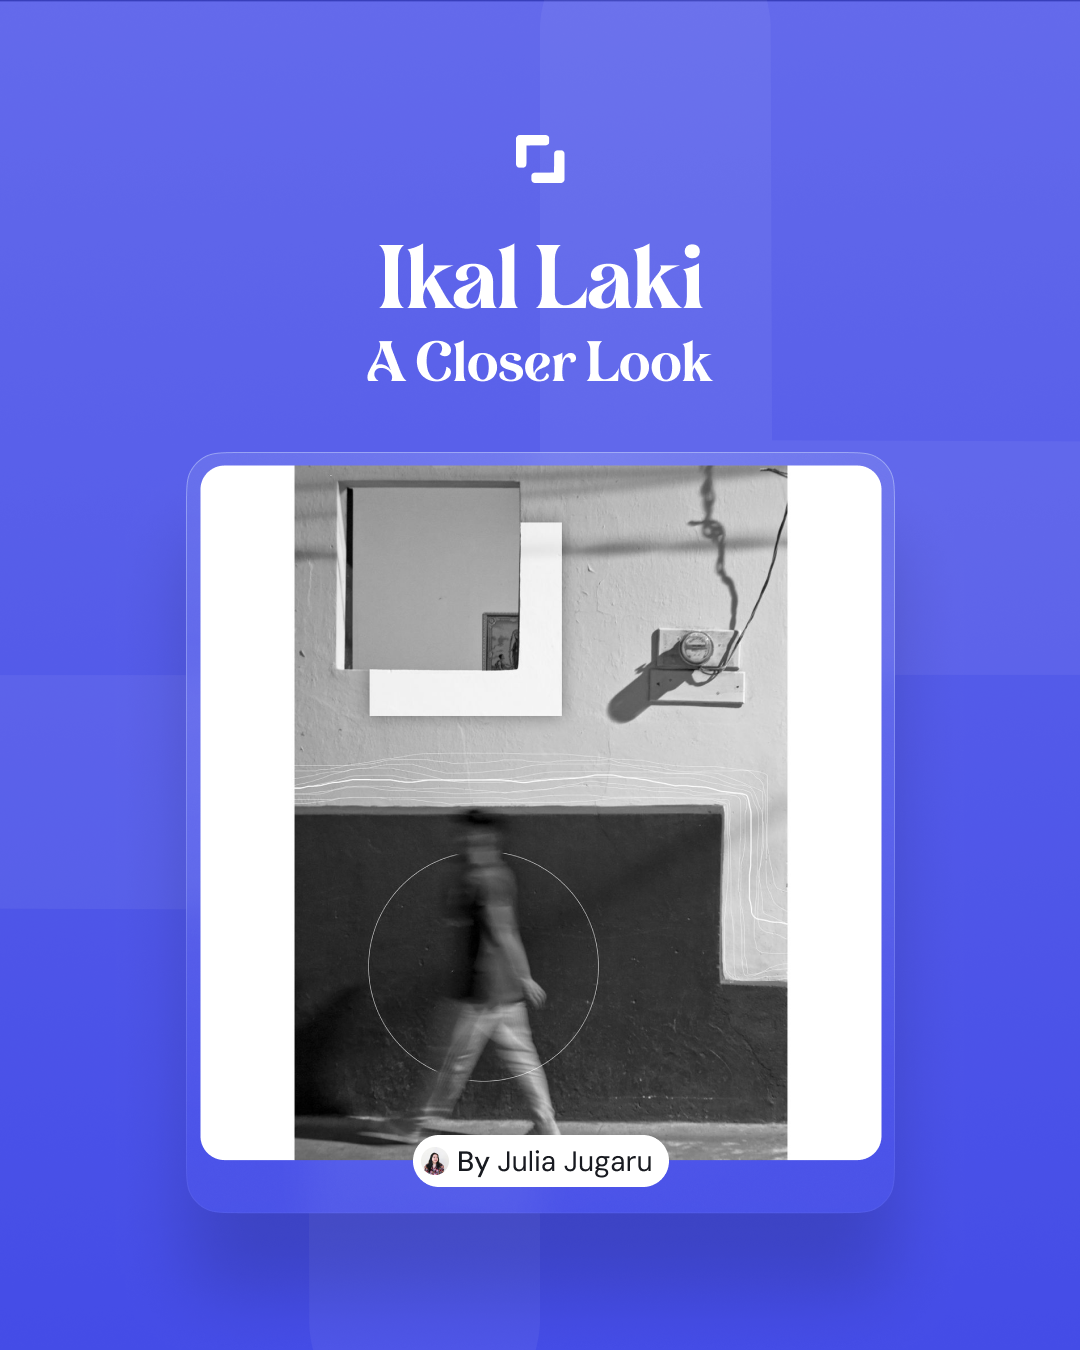 Ikal Laki: A closer look